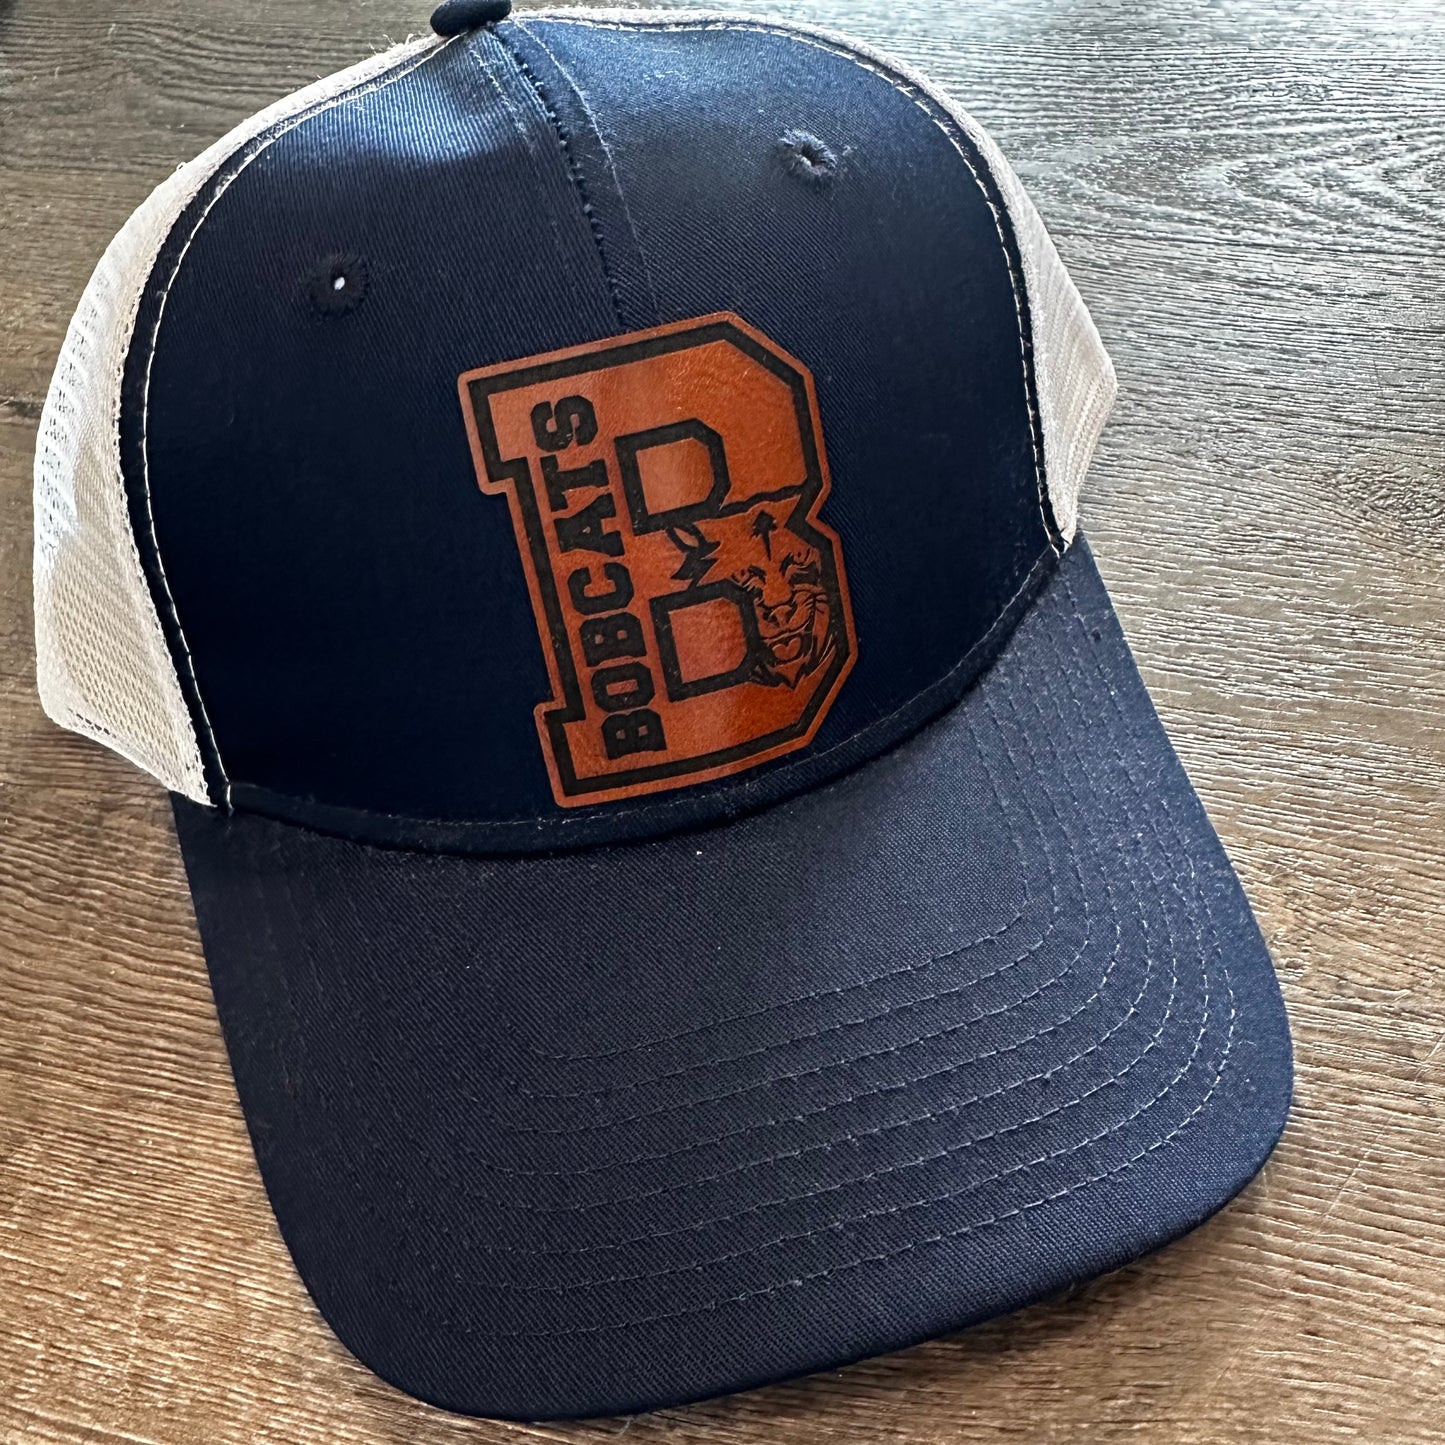 Bangor West - Trucker Hat